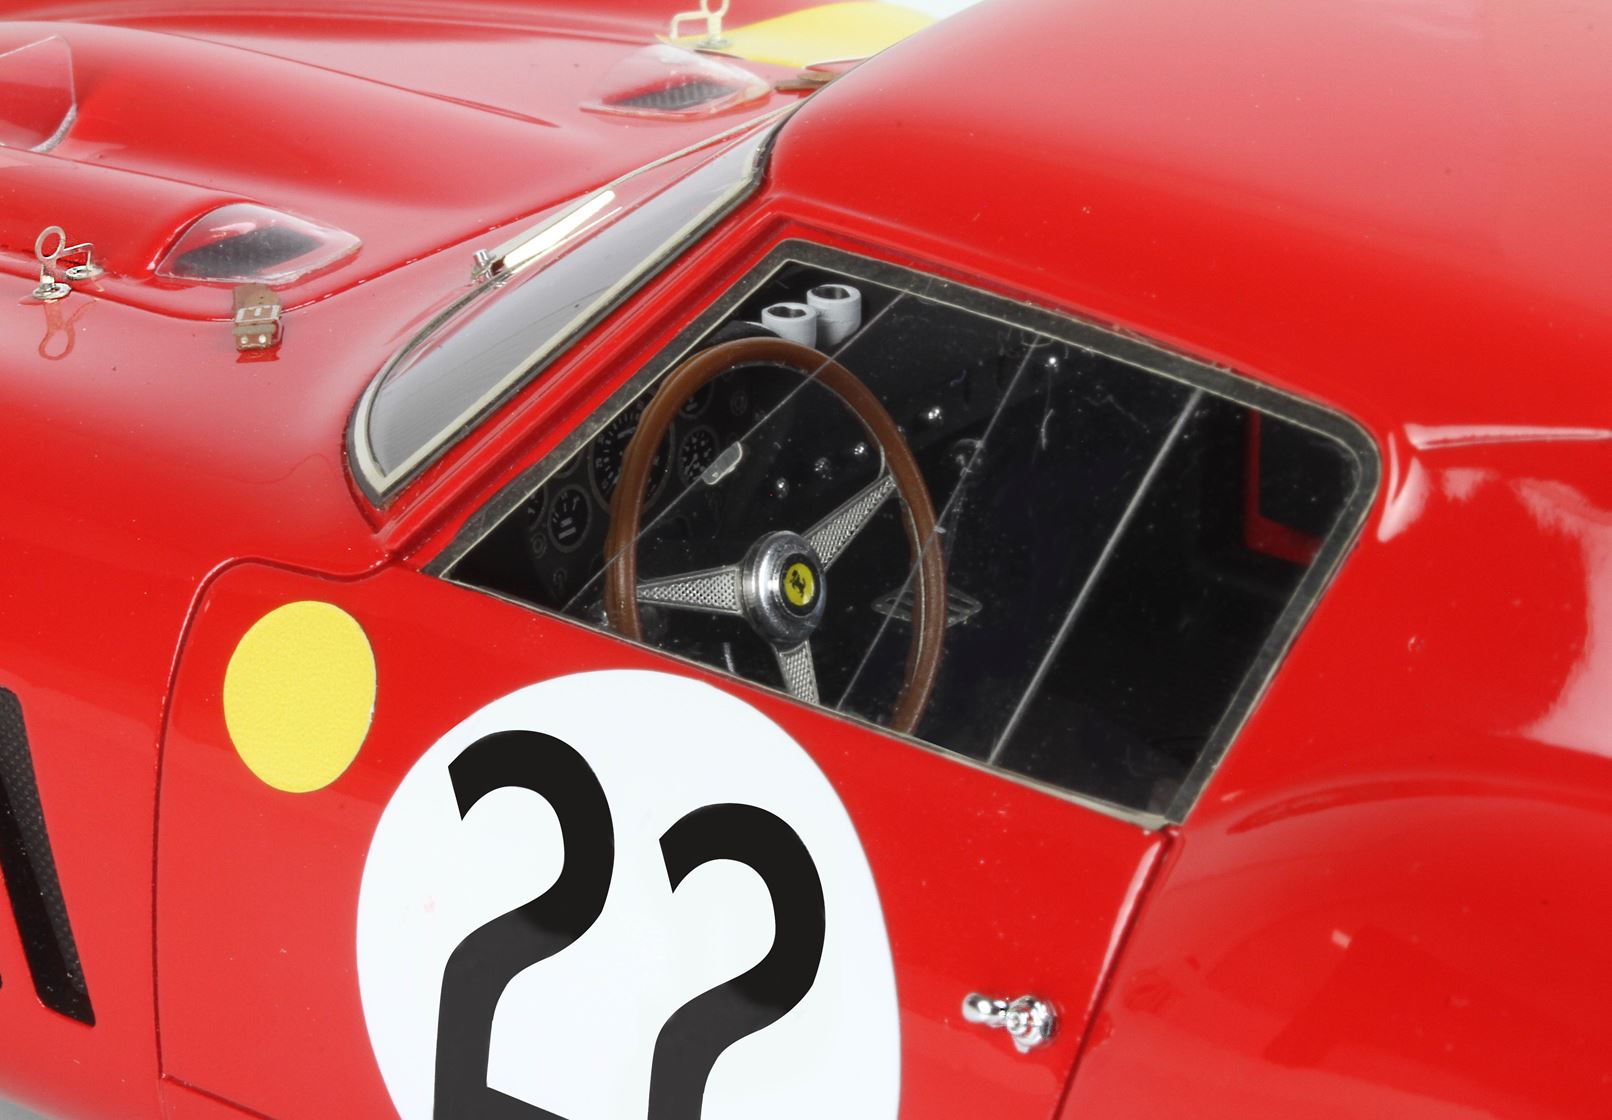 BBR Ferrari 250 GTO 1:18 scale #22 Nick Mason's car